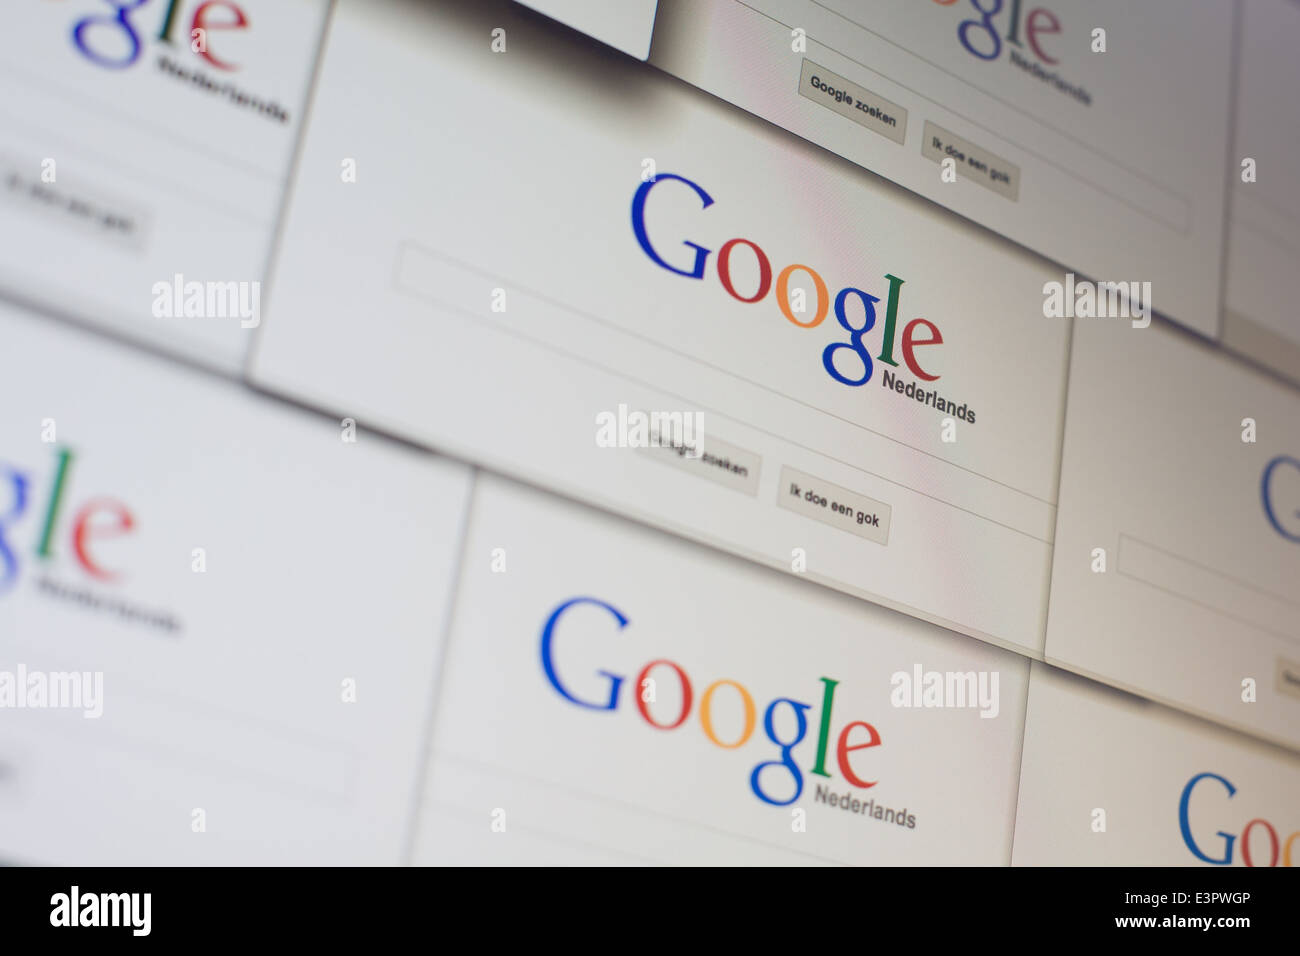 Google Pays-Bas windows sont vus. Banque D'Images